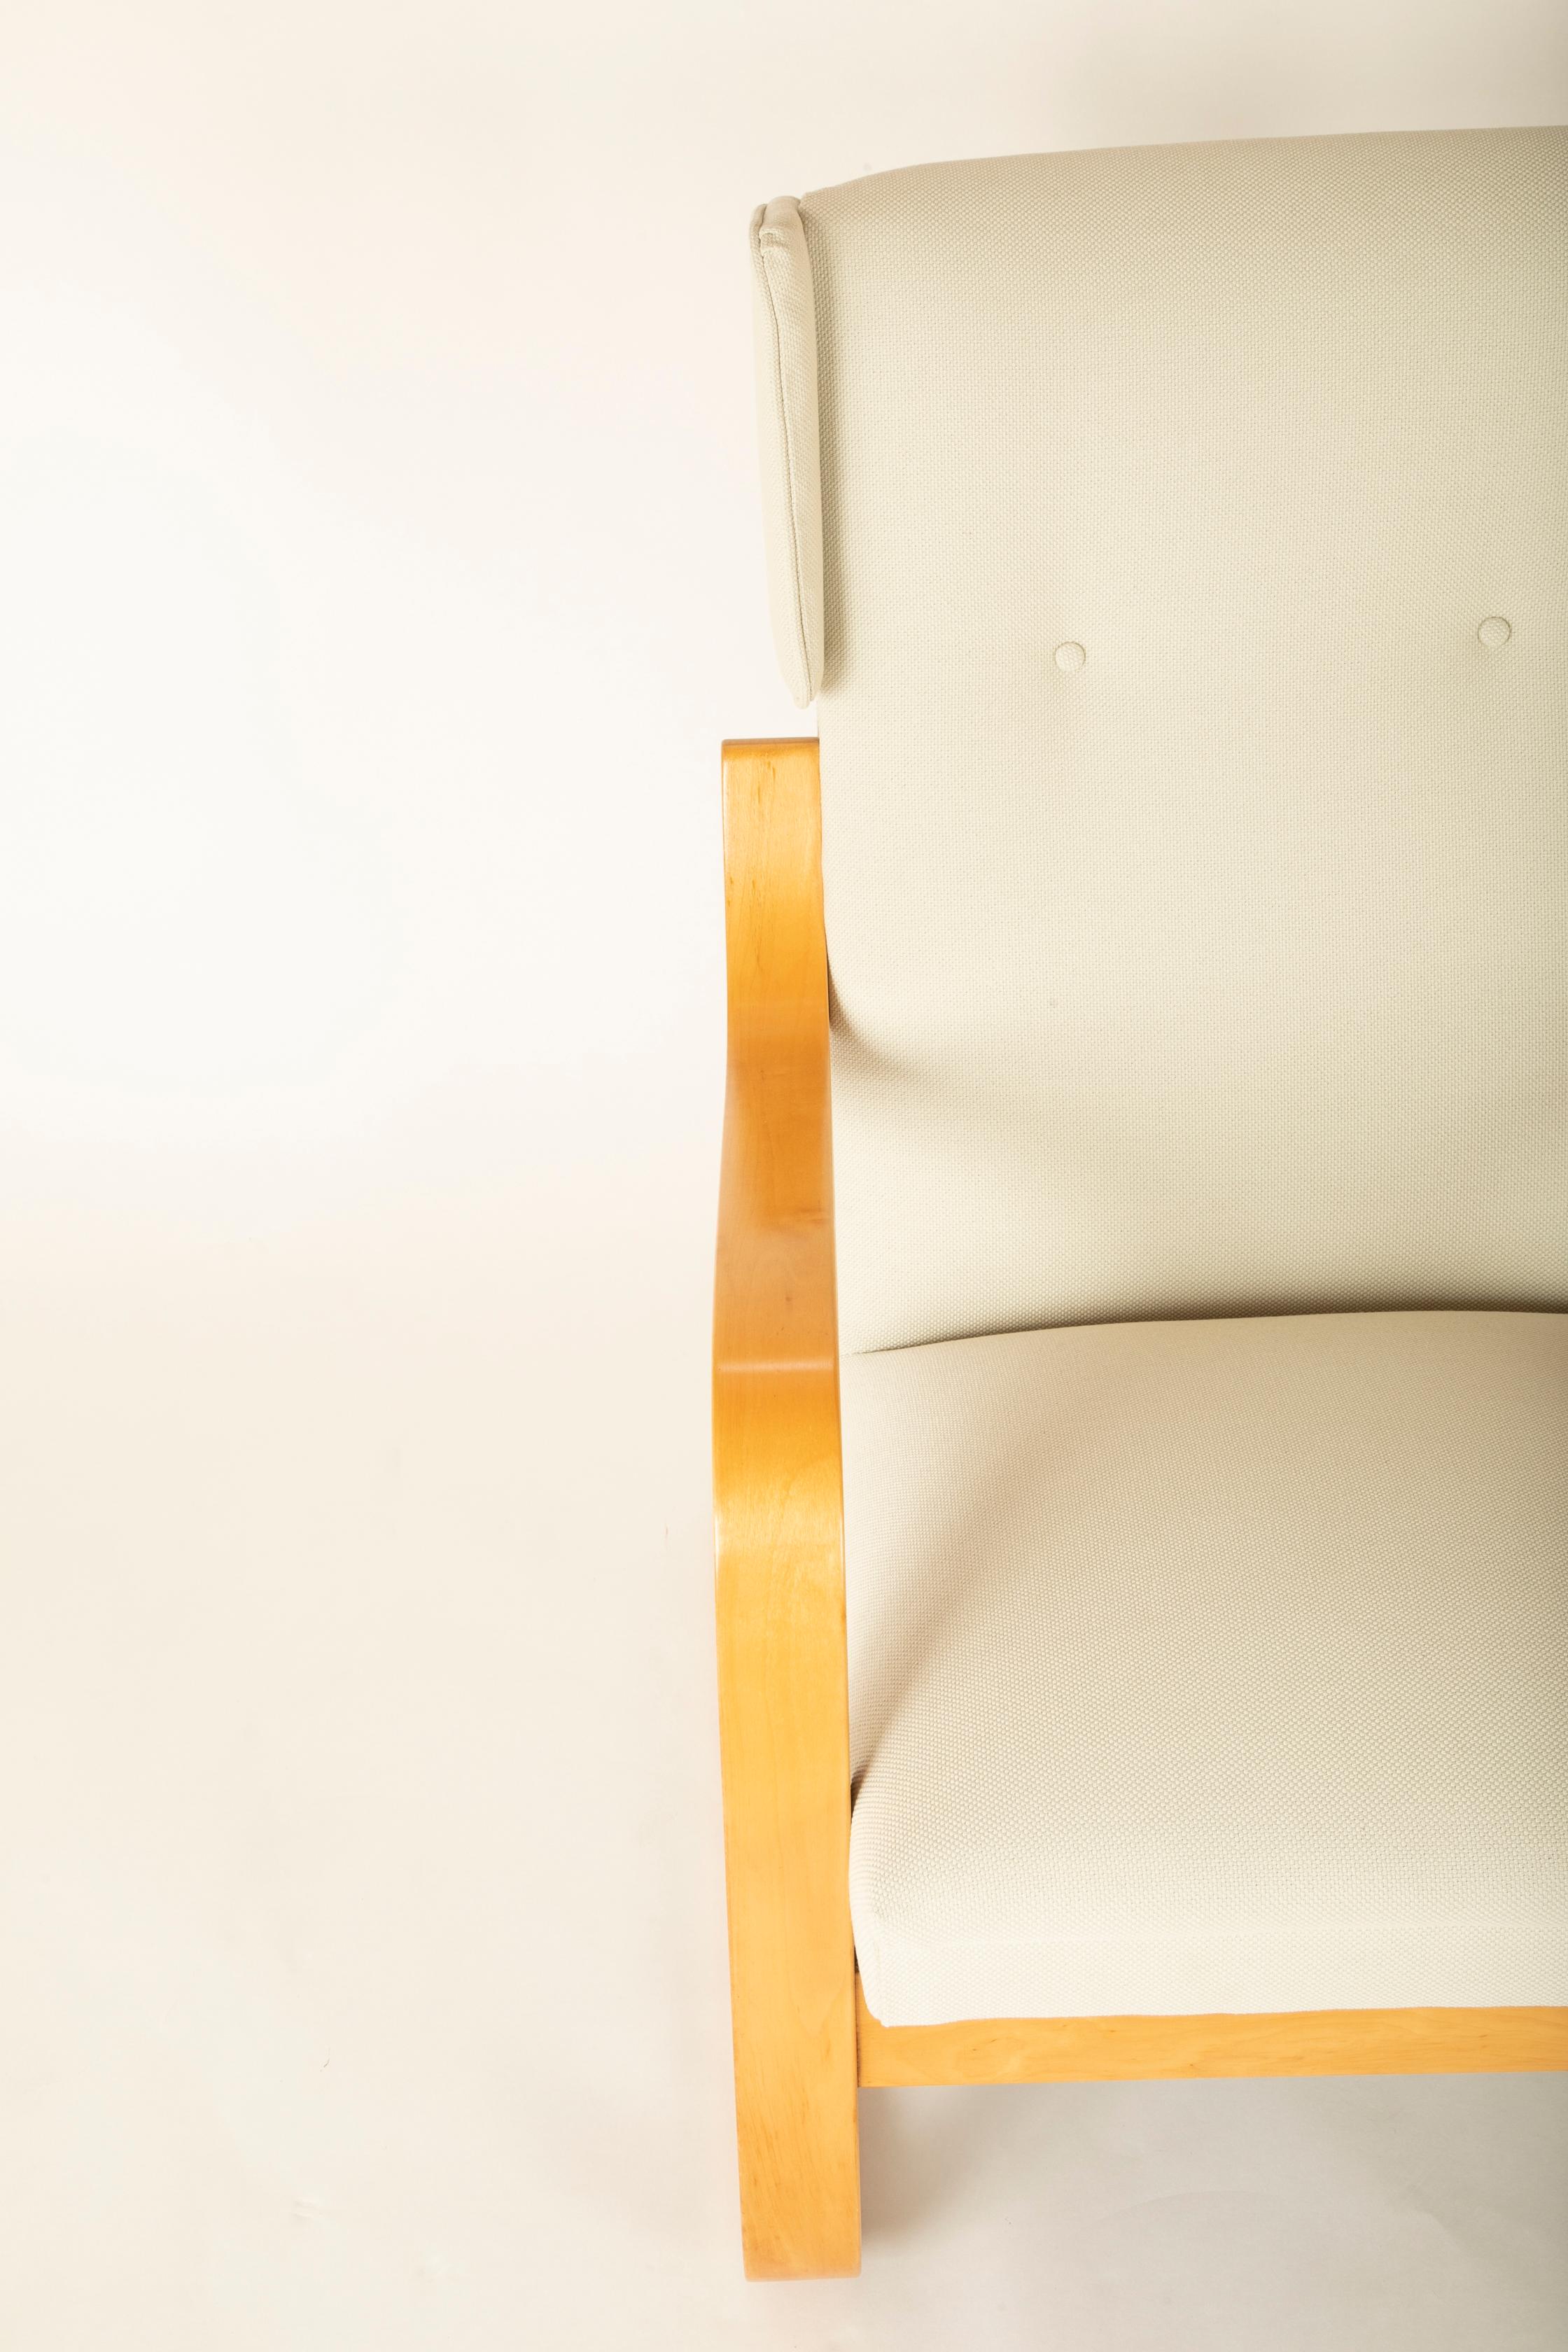 Fin du 20e siècle Paire de chaises à oreilles Alvar Aalto modèle 401 en vente